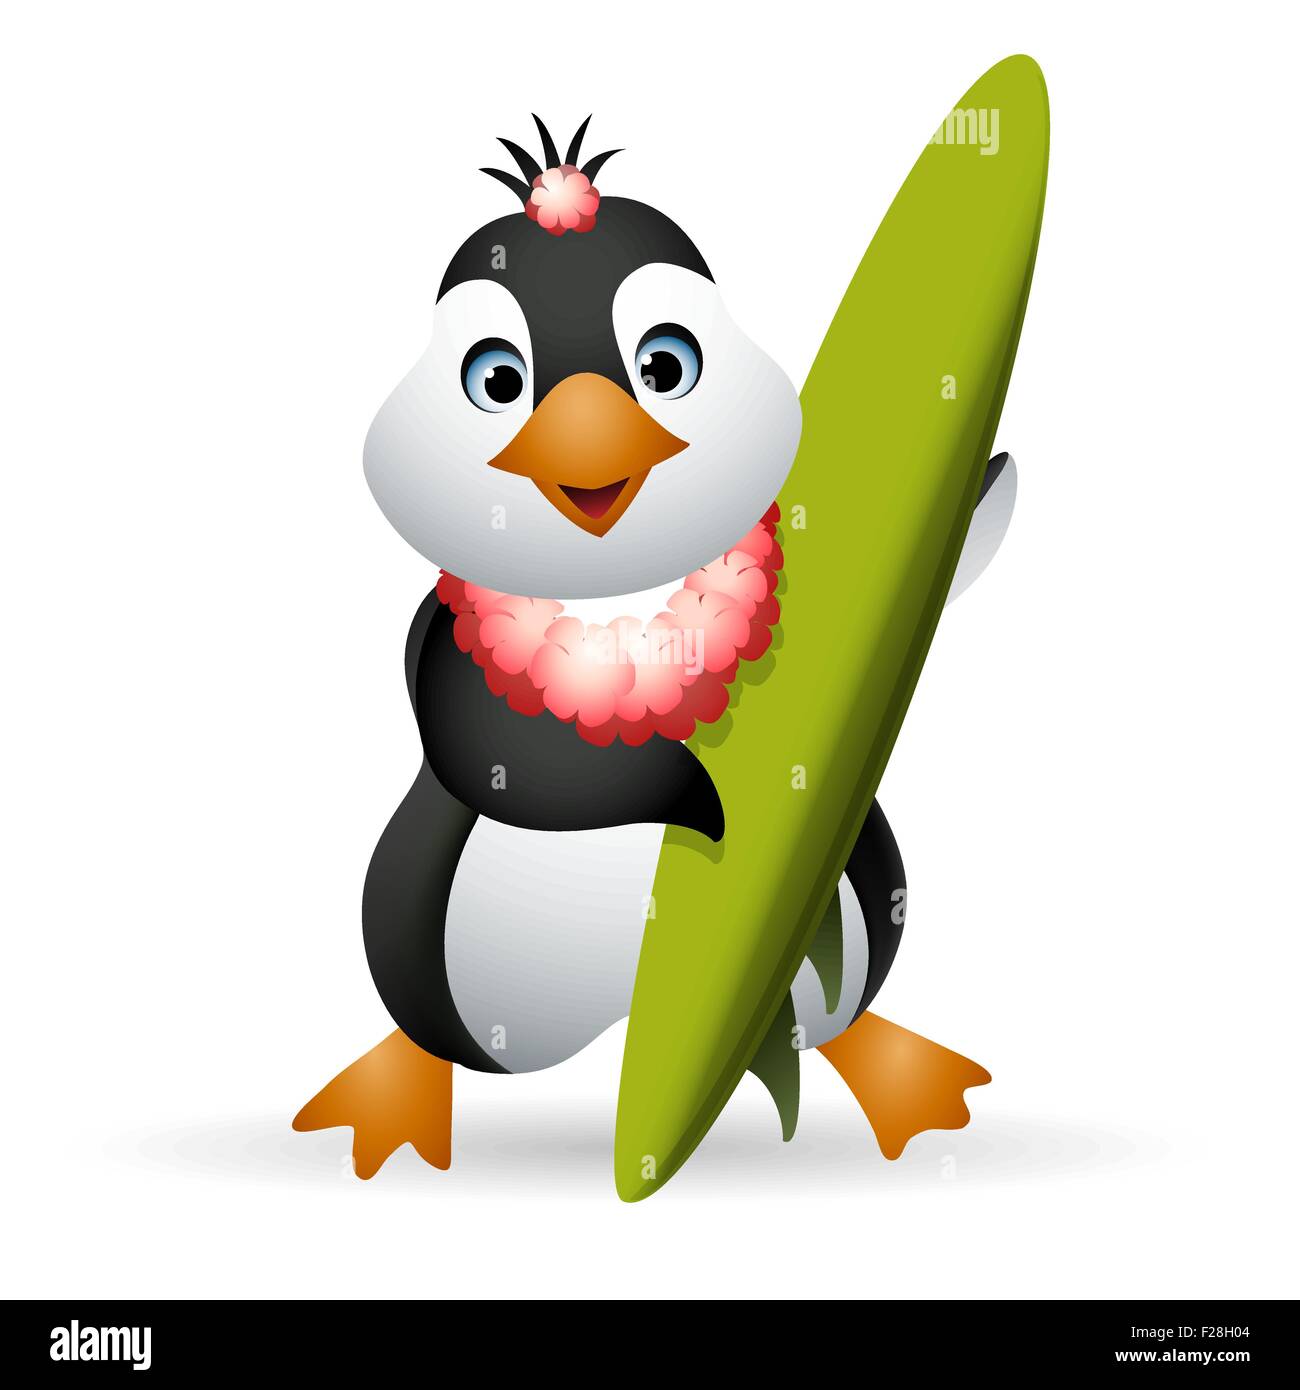 Pinguino in fiore collana in possesso di una tavola da surf. Illustrazione in stile cartoon. Isolato su sfondo bianco. Illustrazione Vettoriale